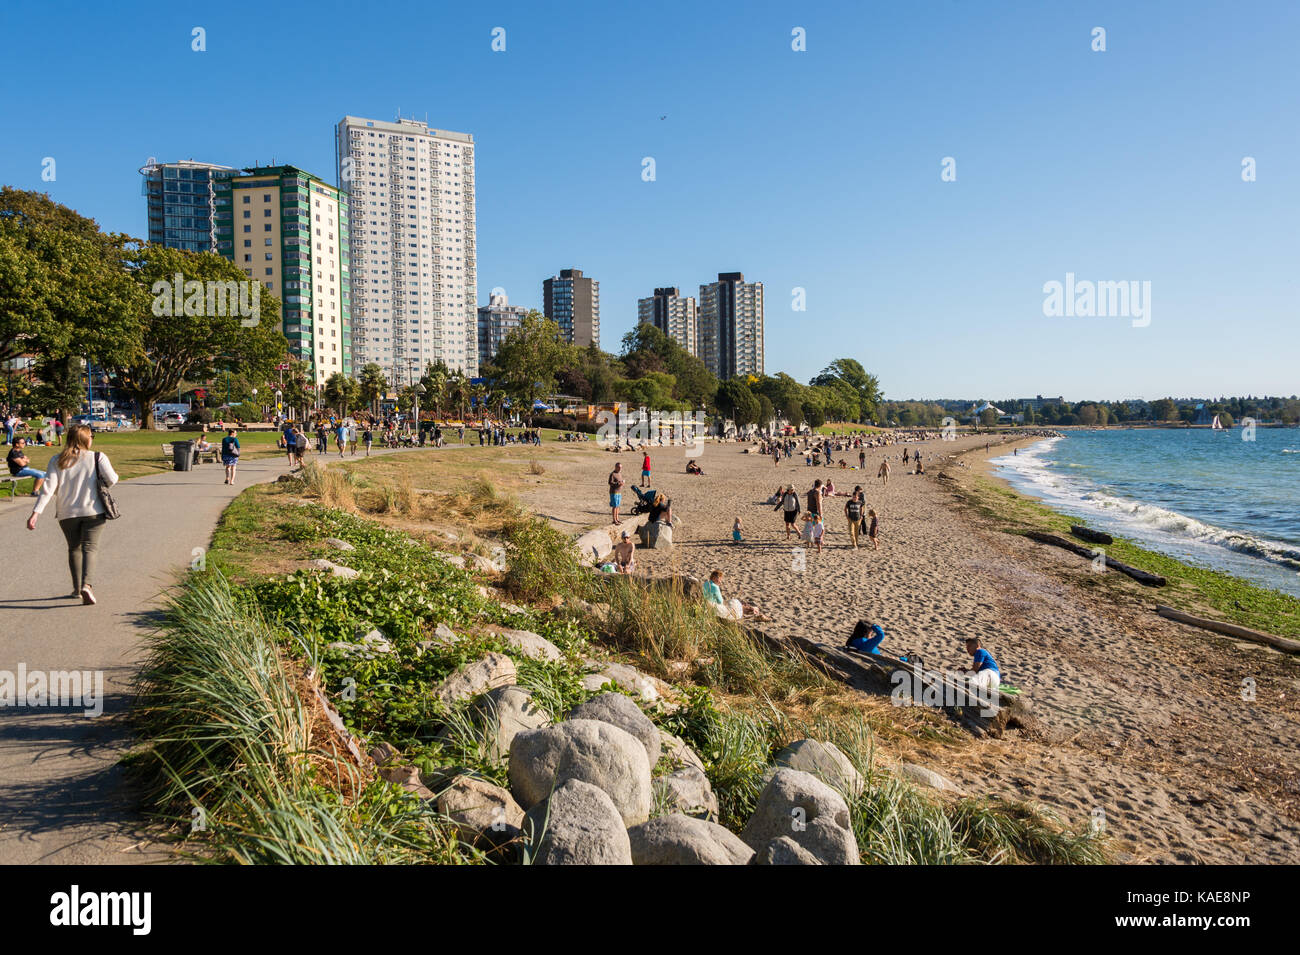 Les personnes bénéficiant d'une journée chaude et ensoleillée à Vancouver English Bay Beach en été. Vancouver, Colombie-Britannique, Canada - le 14 septembre 2017. Banque D'Images